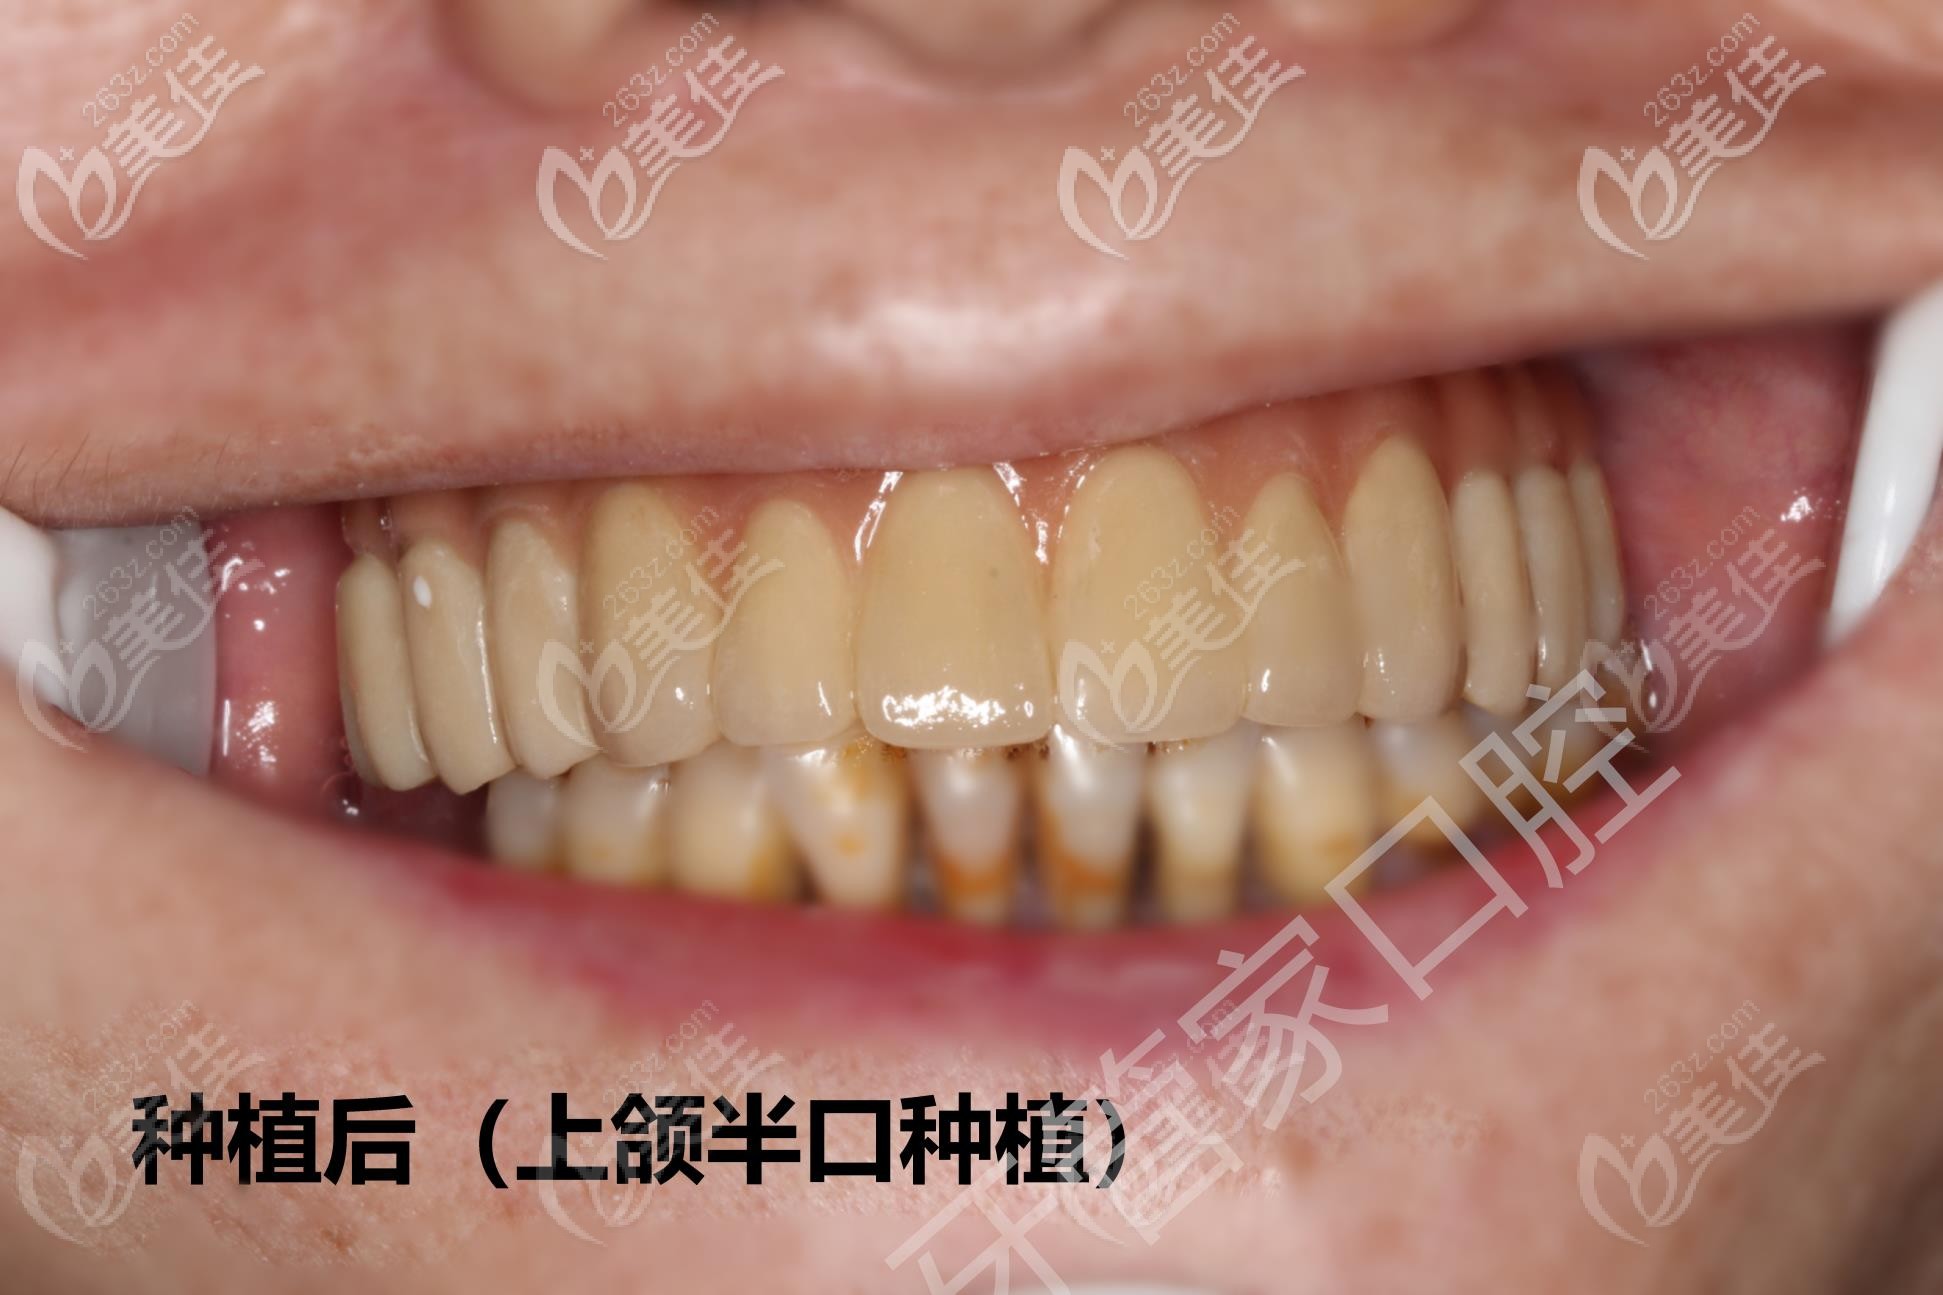 北京西城区的牙管家口腔医院做半口种植牙靠谱吗快看案例